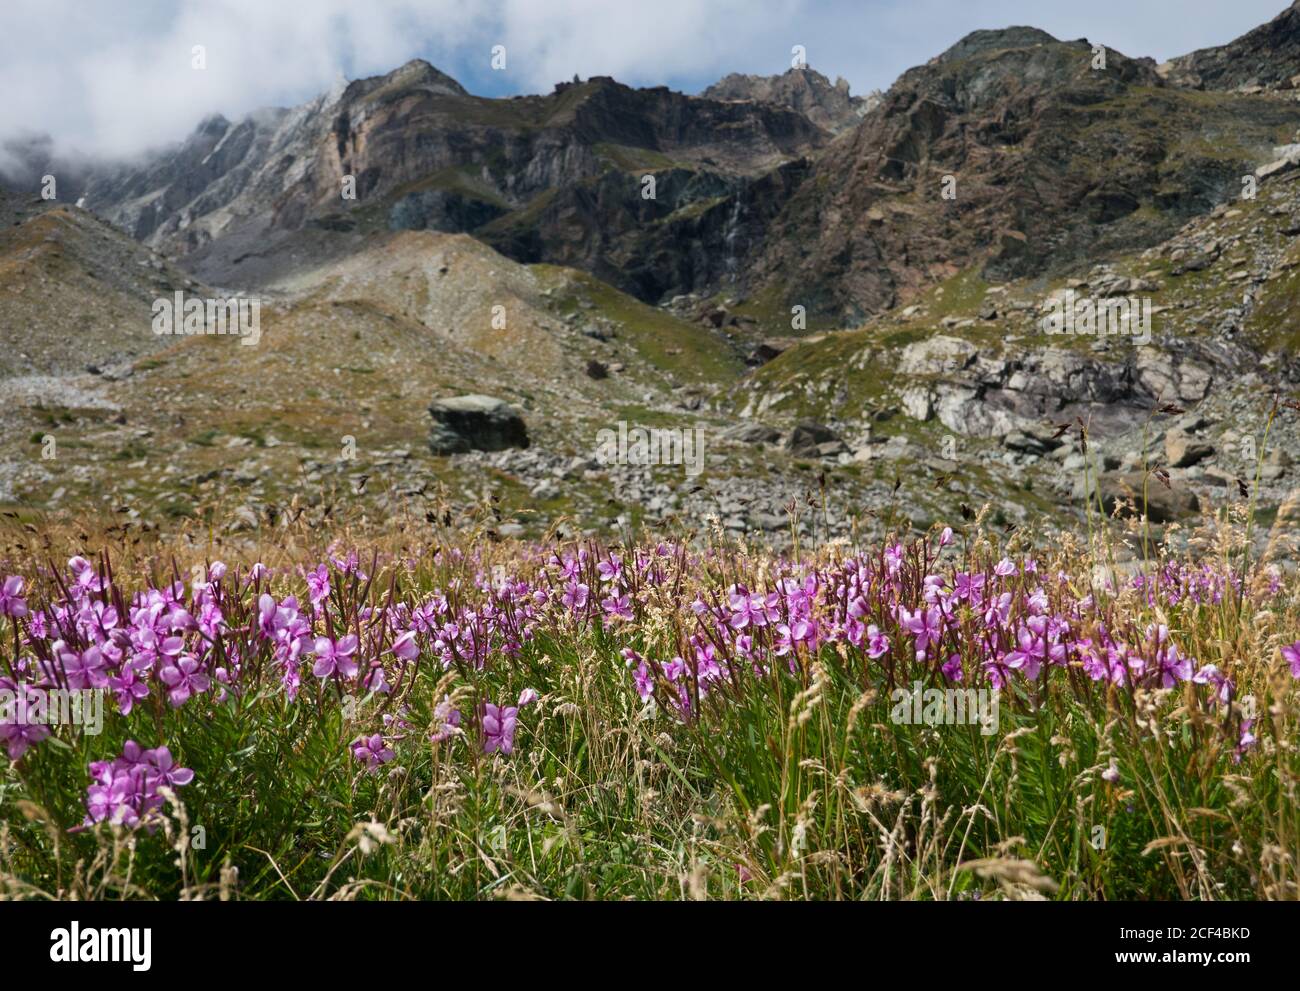 Fiori rosa di salice alpino, Chamaenerion fleischeri, in un paesaggio alpino, sullo sfondo la morena di un ghiacciaio scomparso Foto Stock